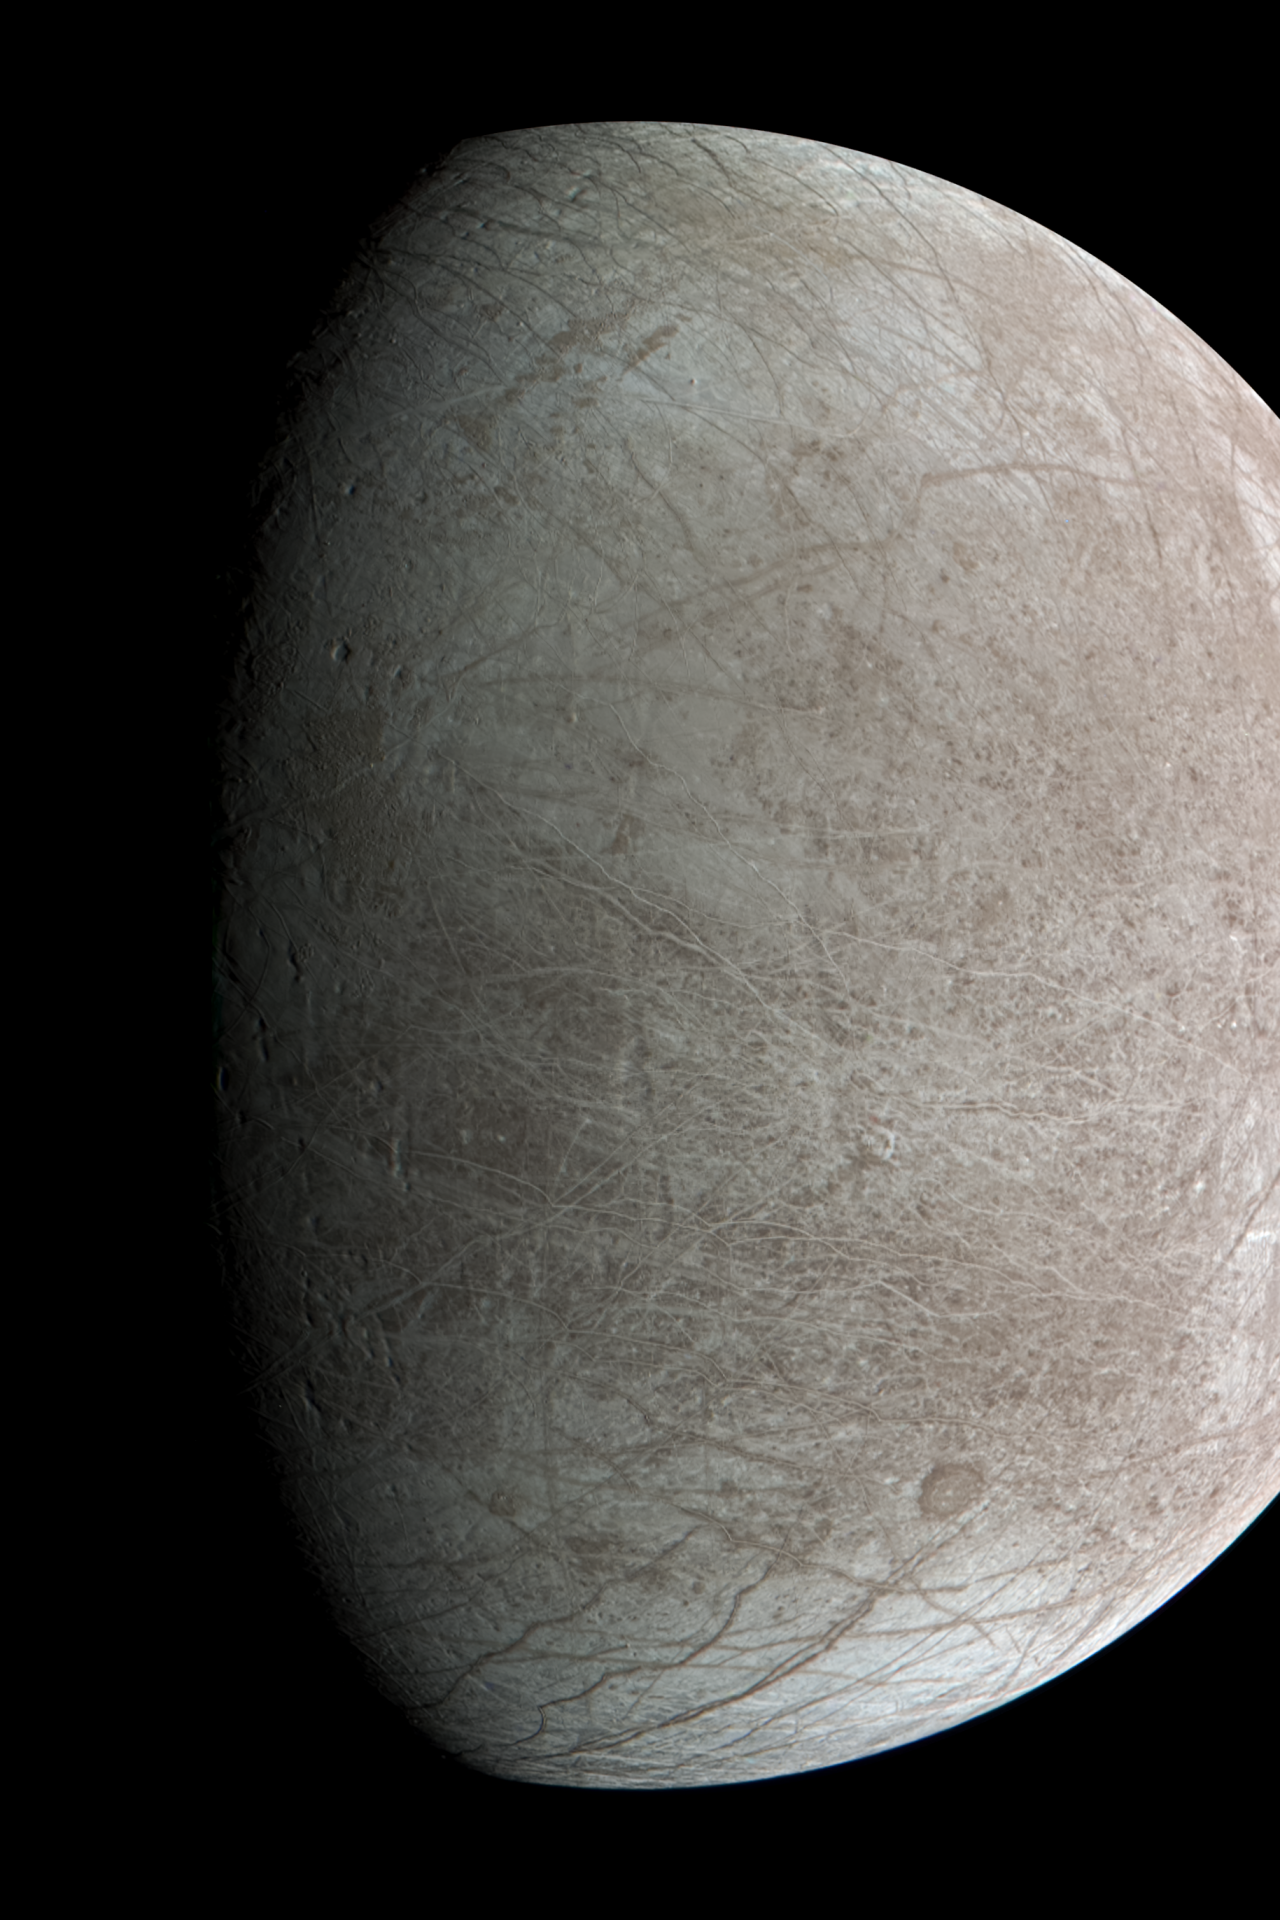 A lua de Júpiter, Europa, pode conter vida